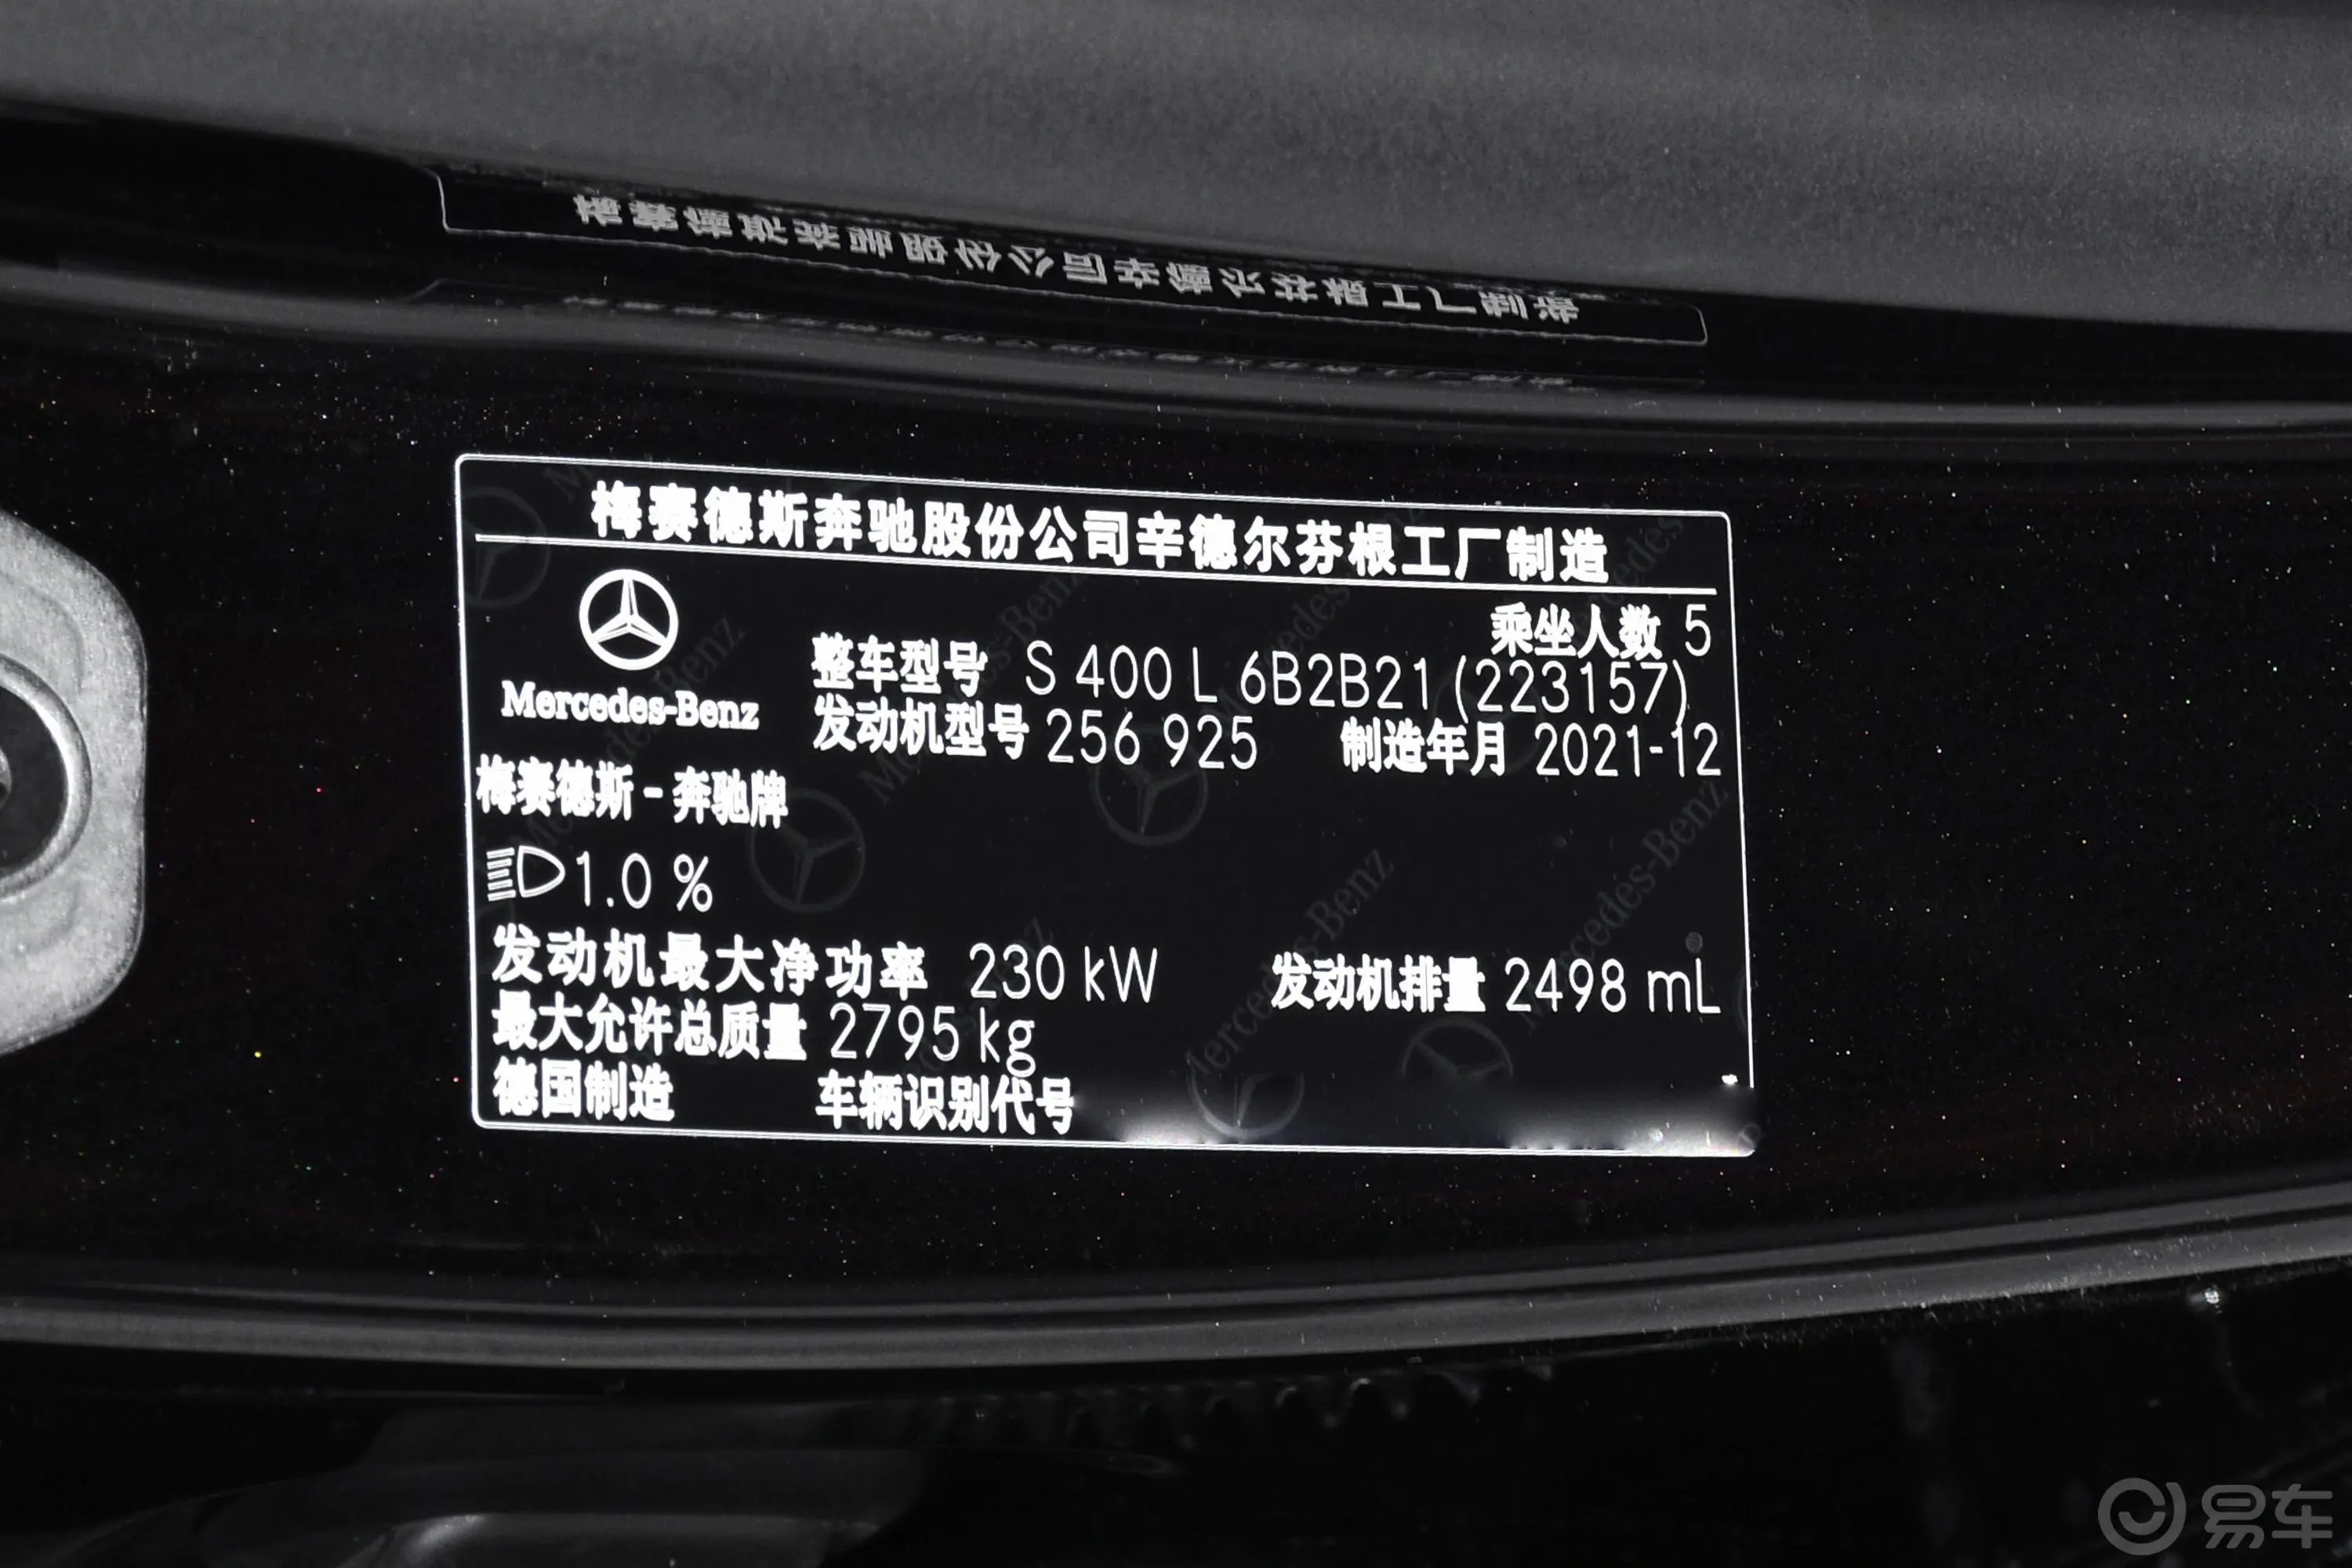 奔驰S级改款 S 400 L 豪华型车辆信息铭牌